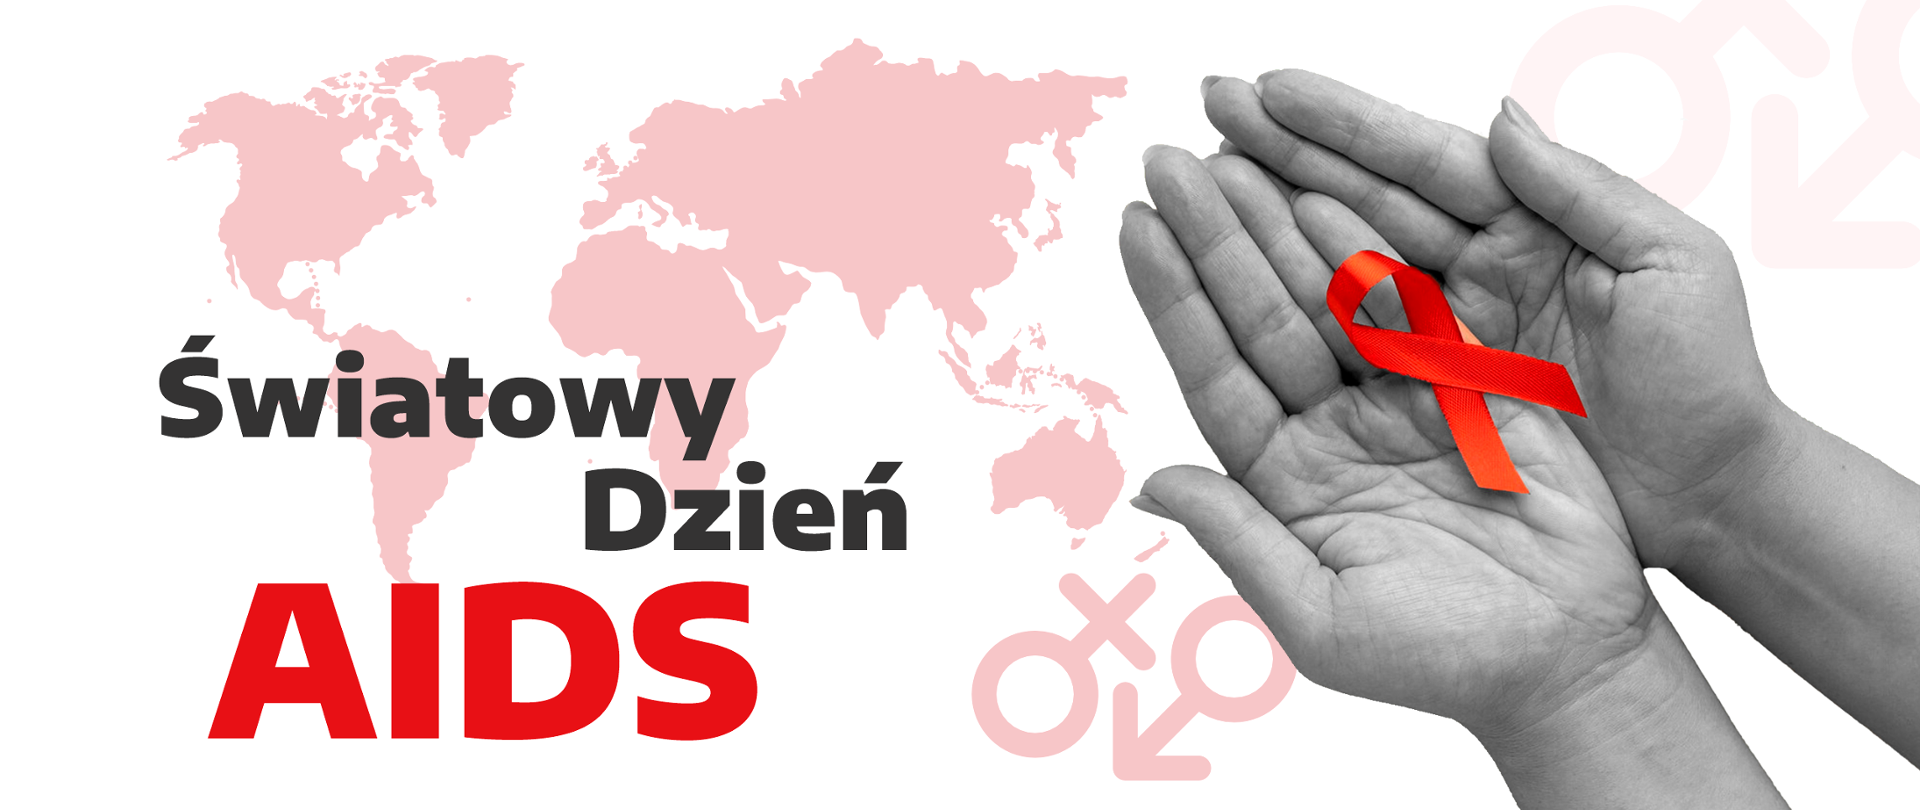 baner z napisem Światowy Dzień AIDS, na otwartych dłoniach czerwona kokardka, w tle mapa świata